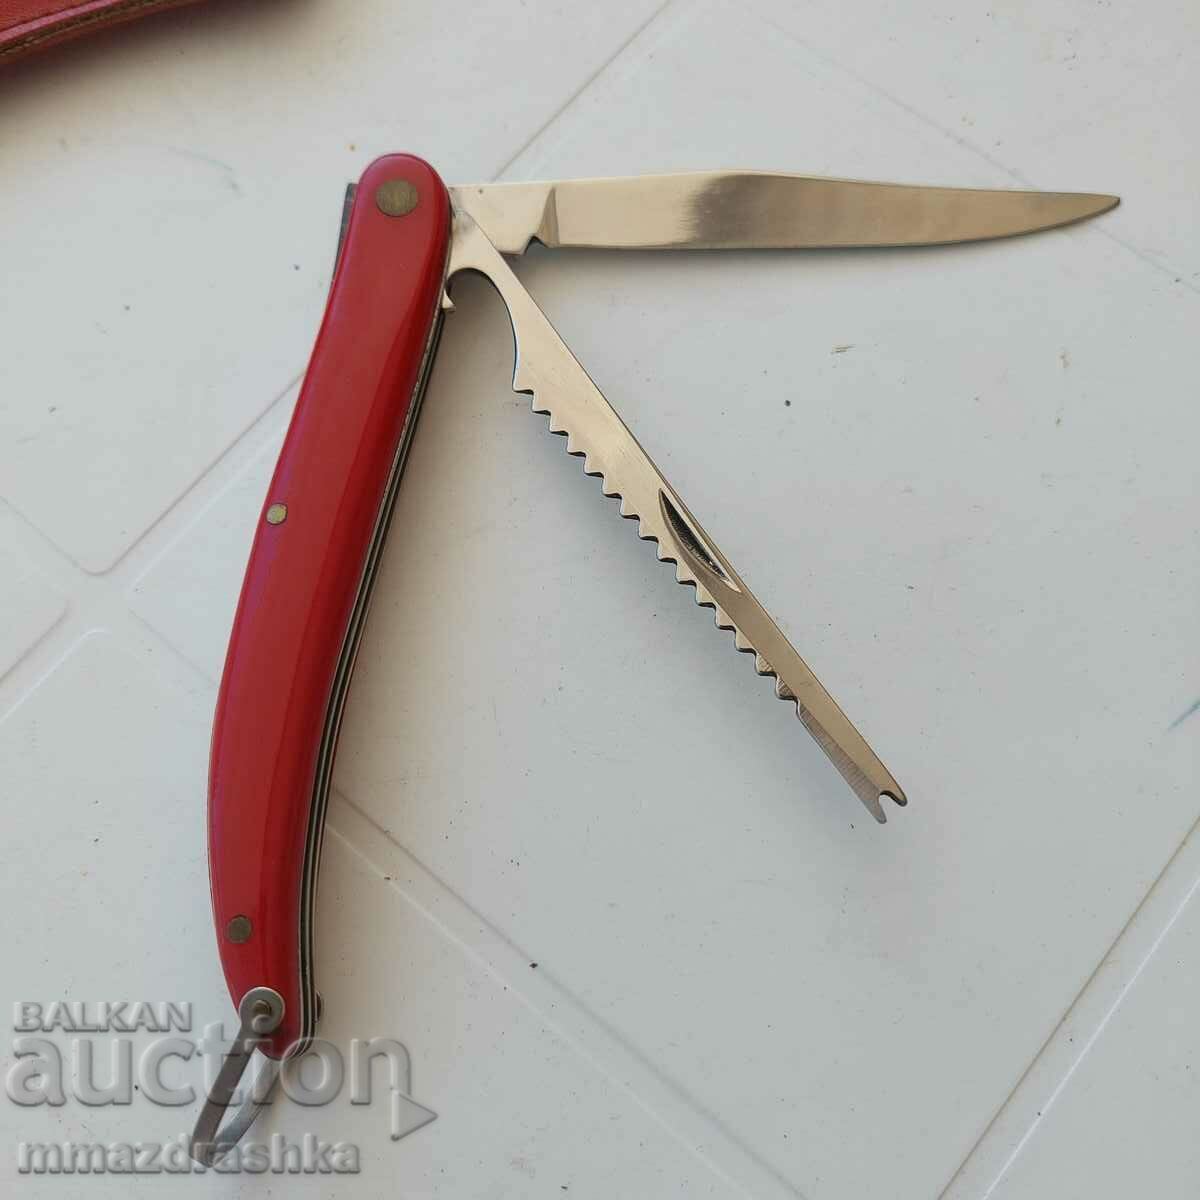 GERLACH Polish pocket knife